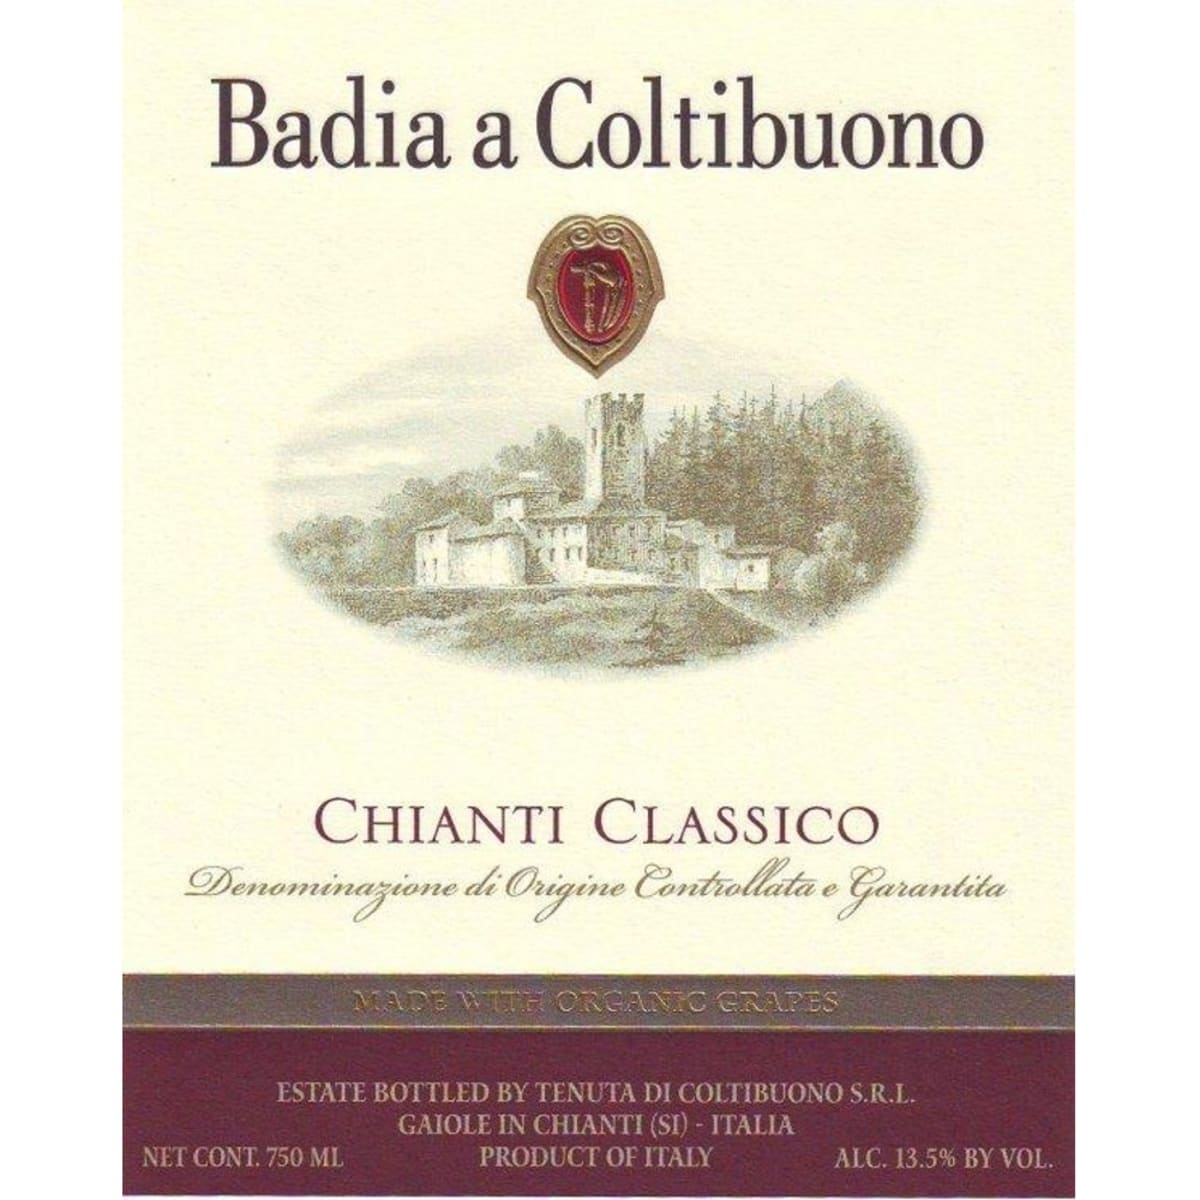 Badia a Coltibuono Chianti Classico (375ML half-bottle) 2010 Front Label